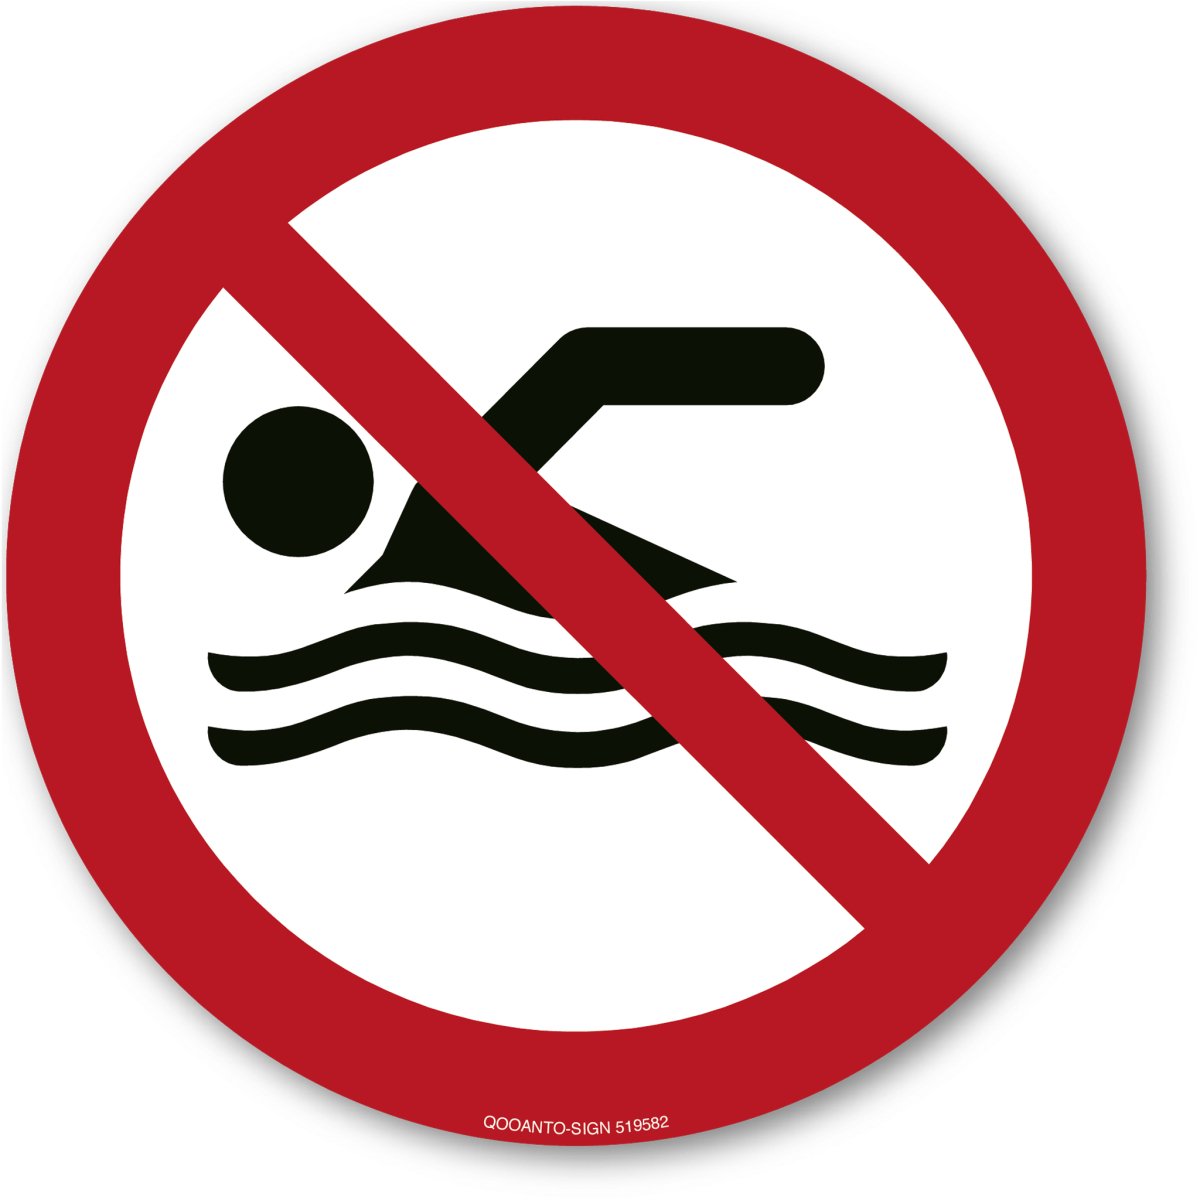 Schwimmen Verboten, EN ISO 7010, WSP002 Verbotsschild oder Aufkleber aus Alu-Verbund oder Selbstklebefolie mit UV-Schutz - QOOANTO-SIGN